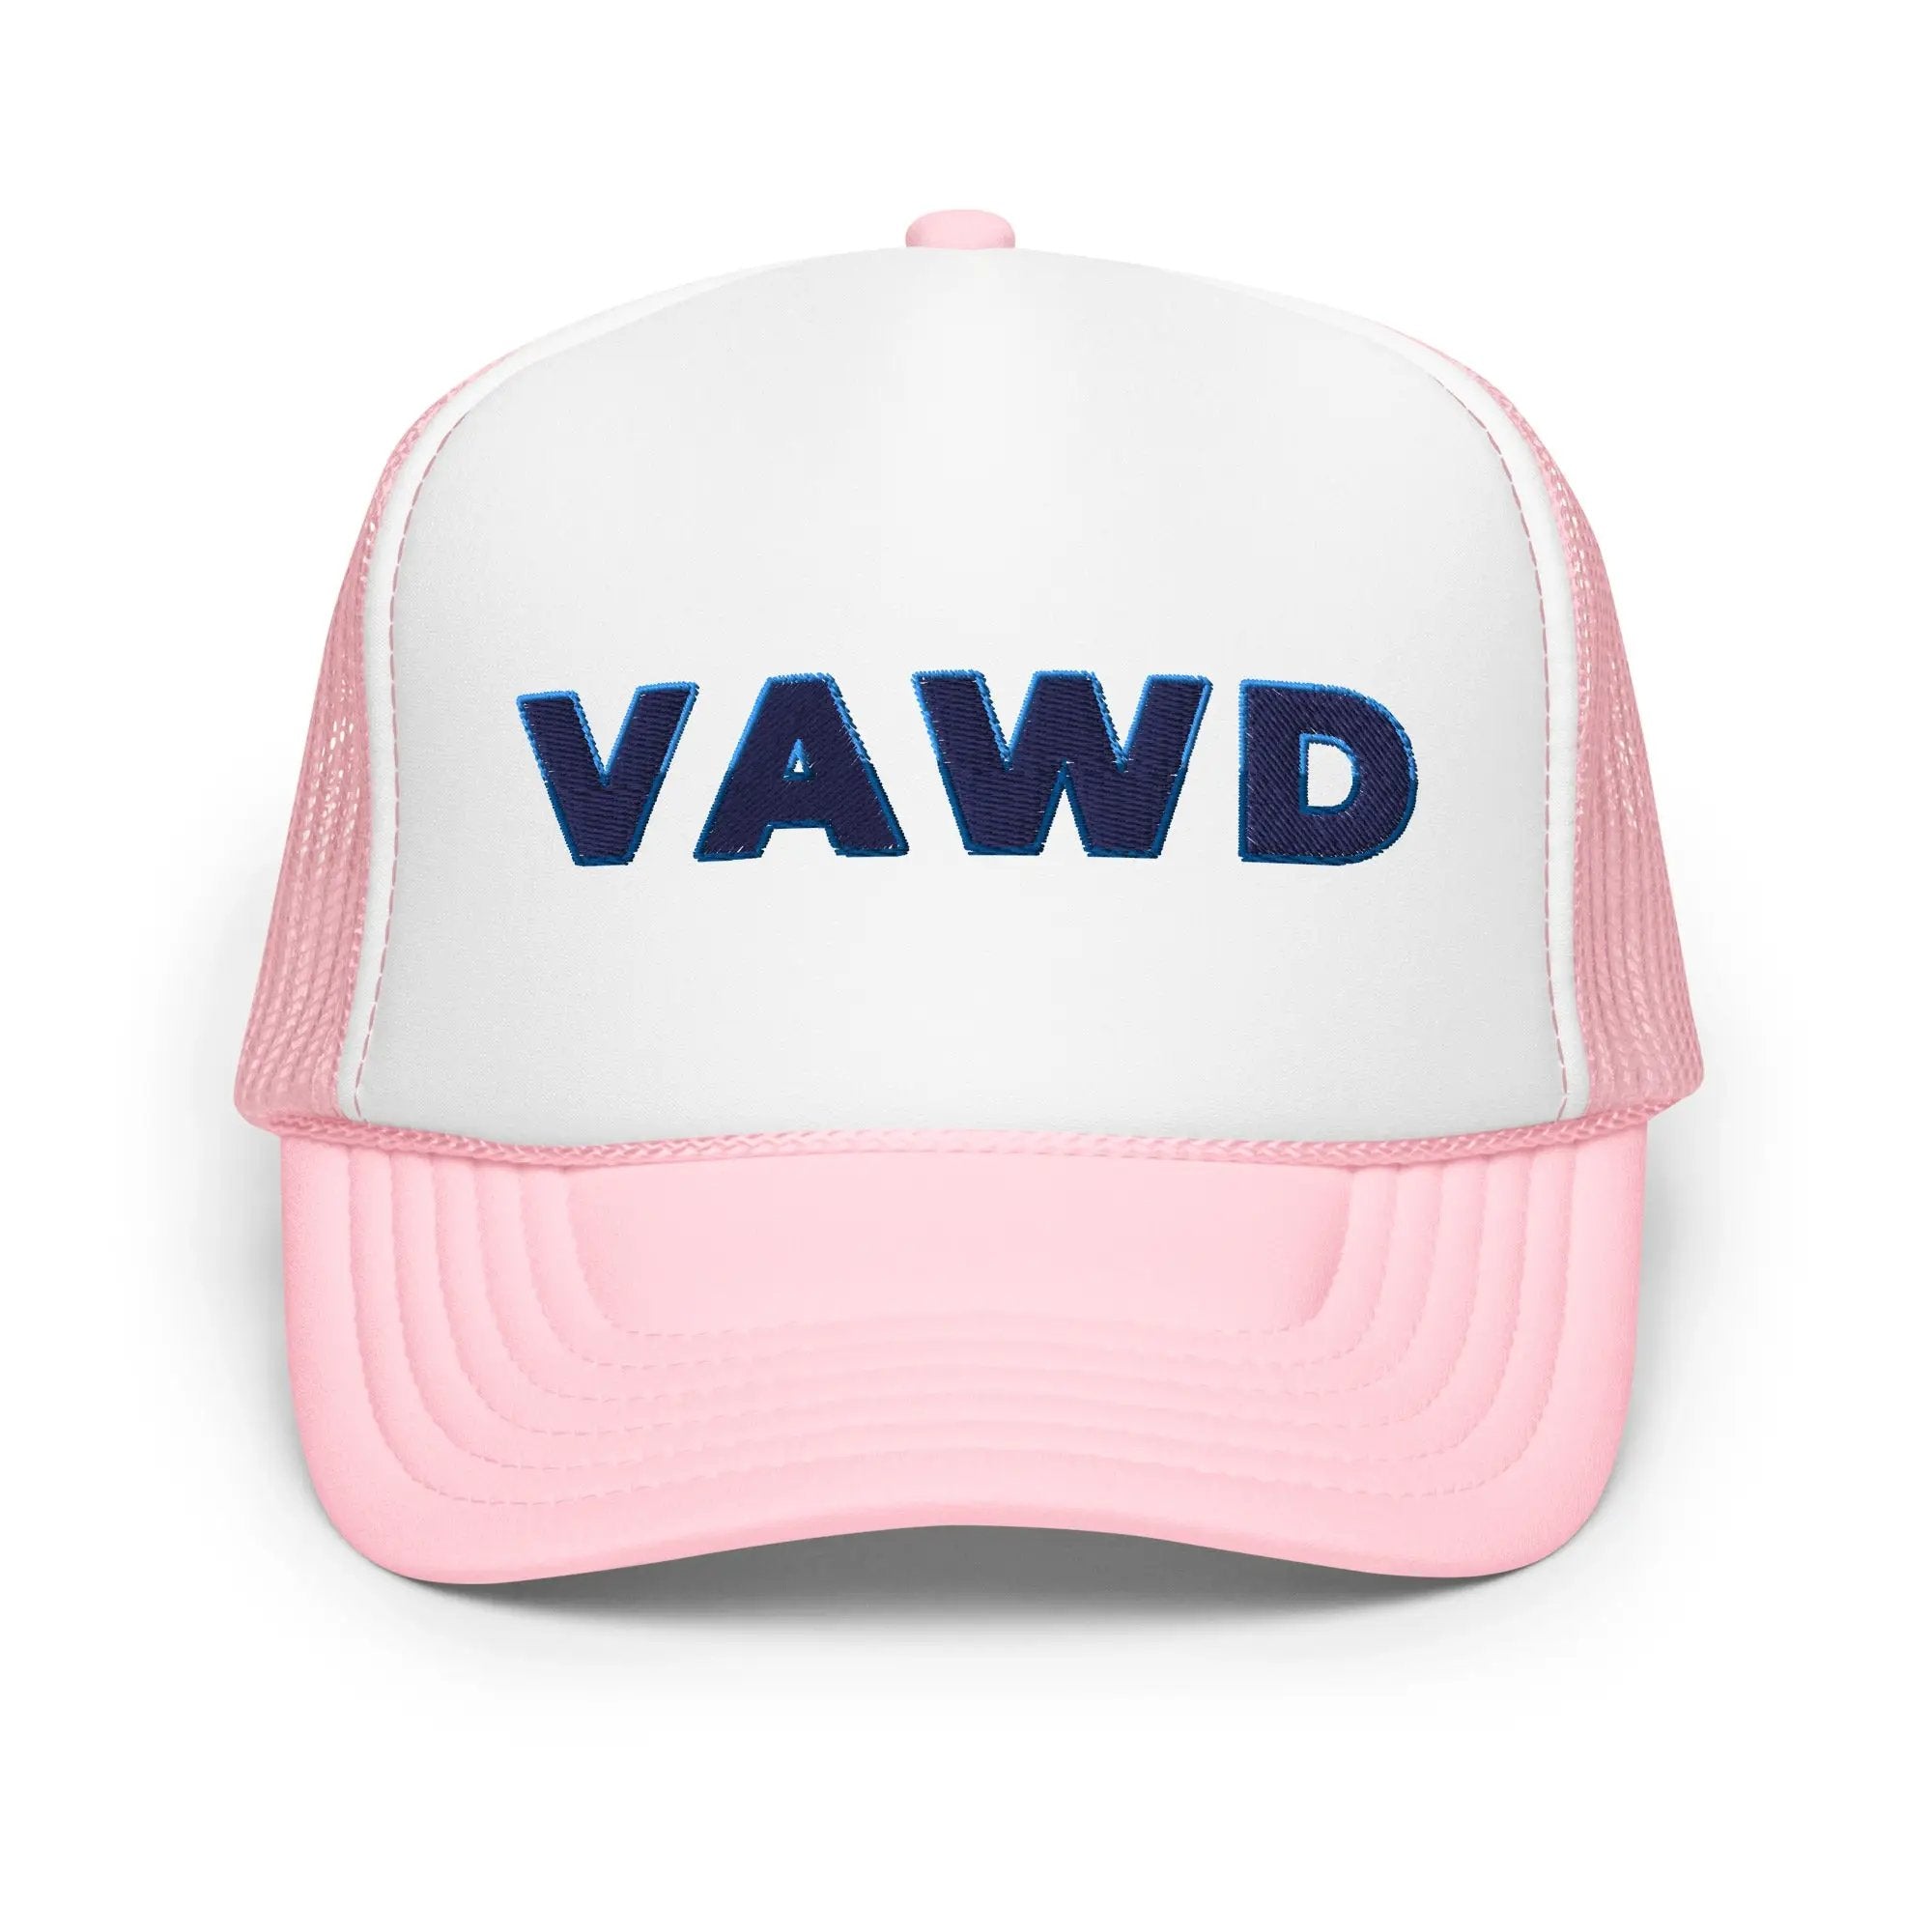 VAWD Foam trucker hat